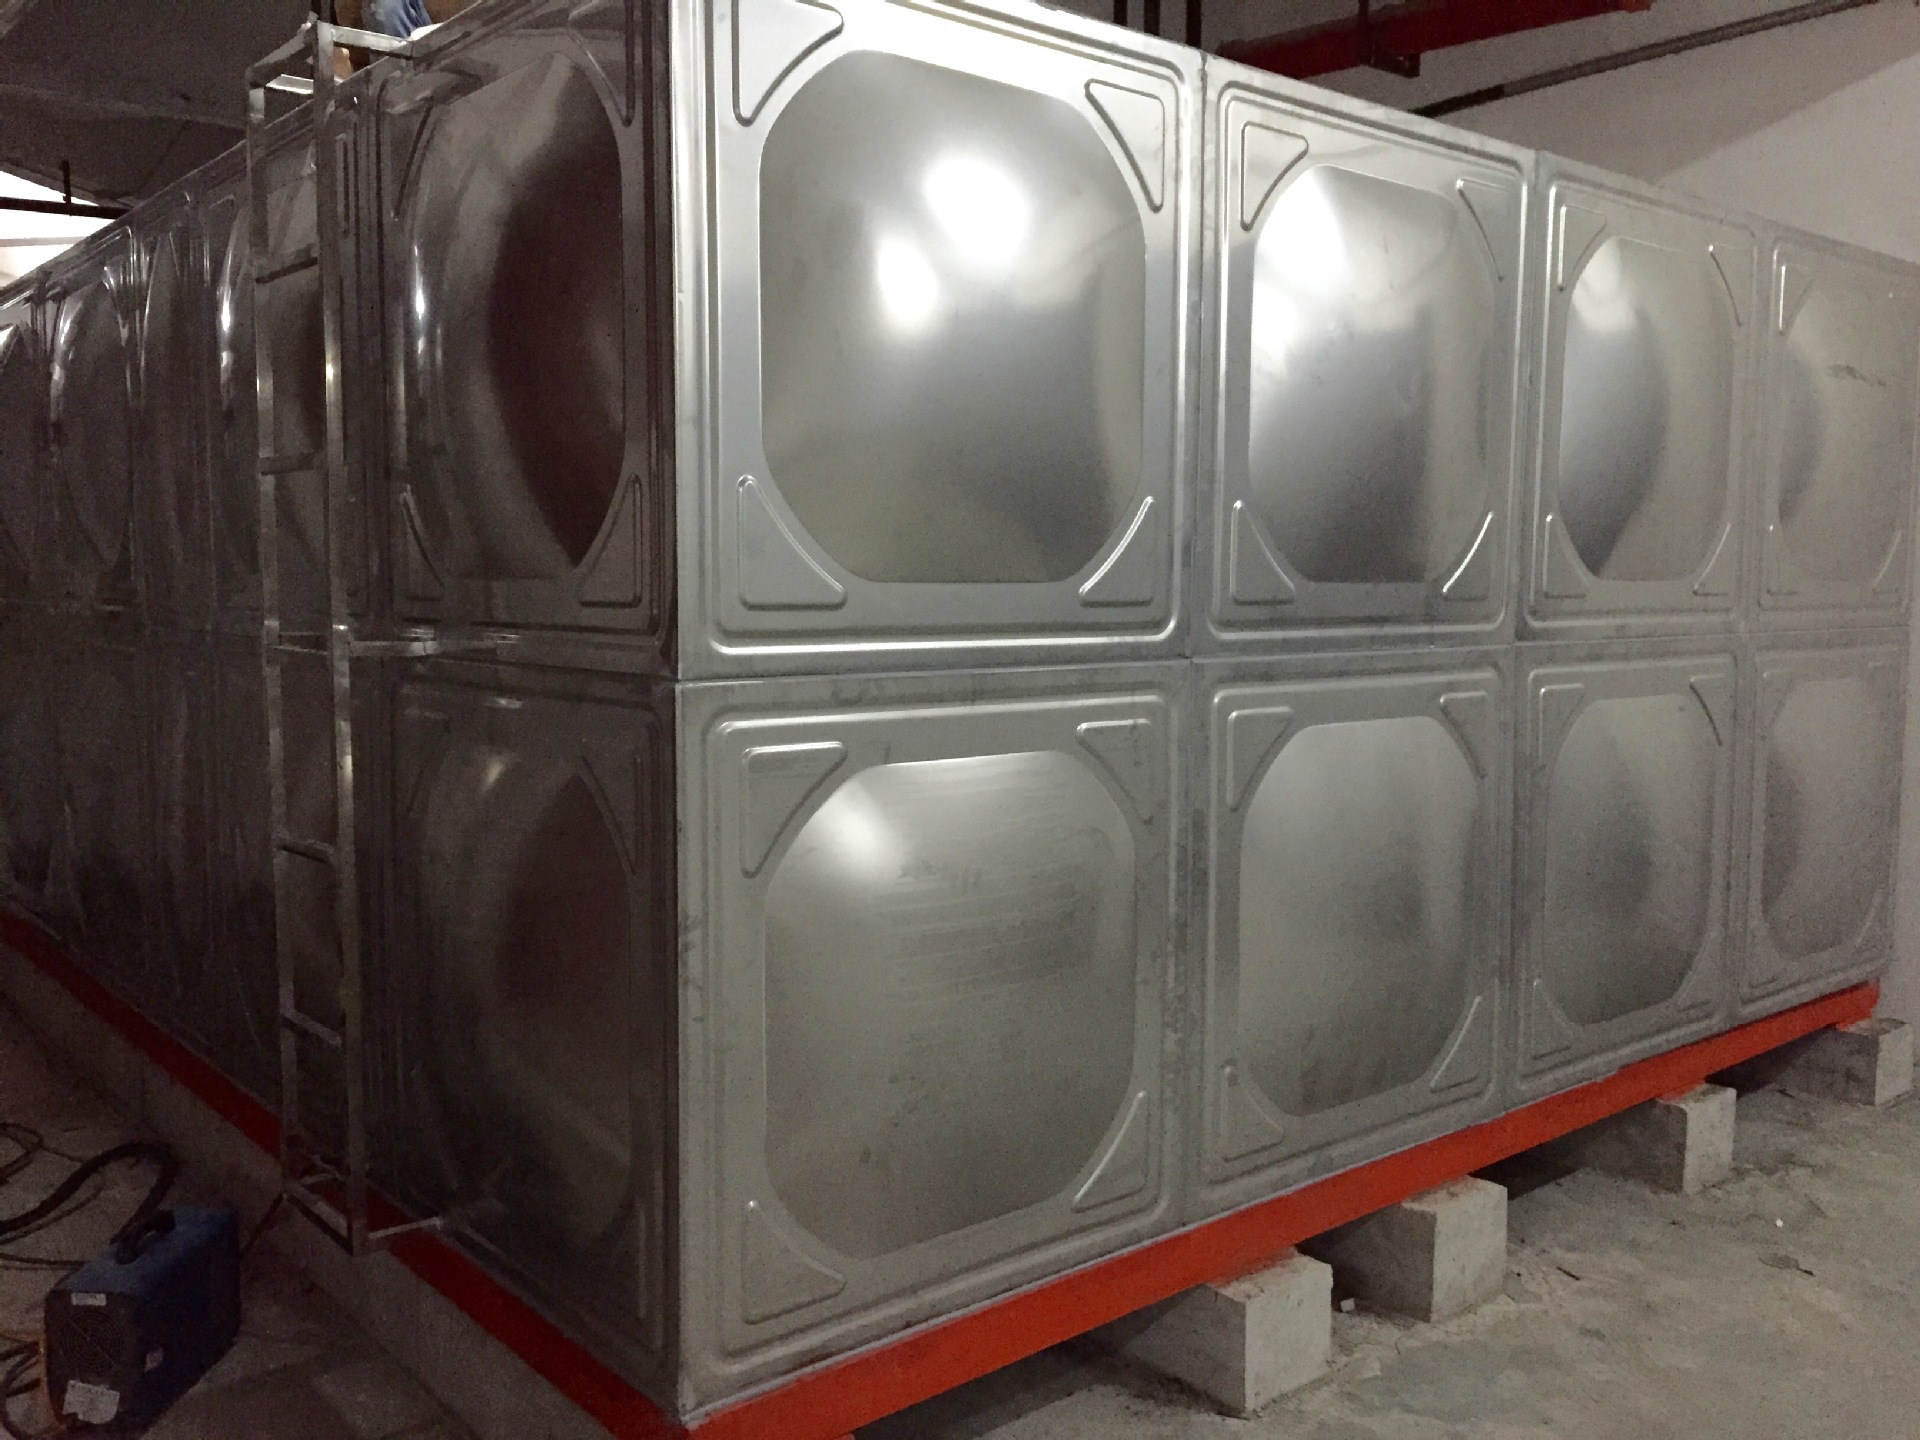 304不锈钢消防水箱 方形保温水箱 不锈钢组合式水箱厂家批发